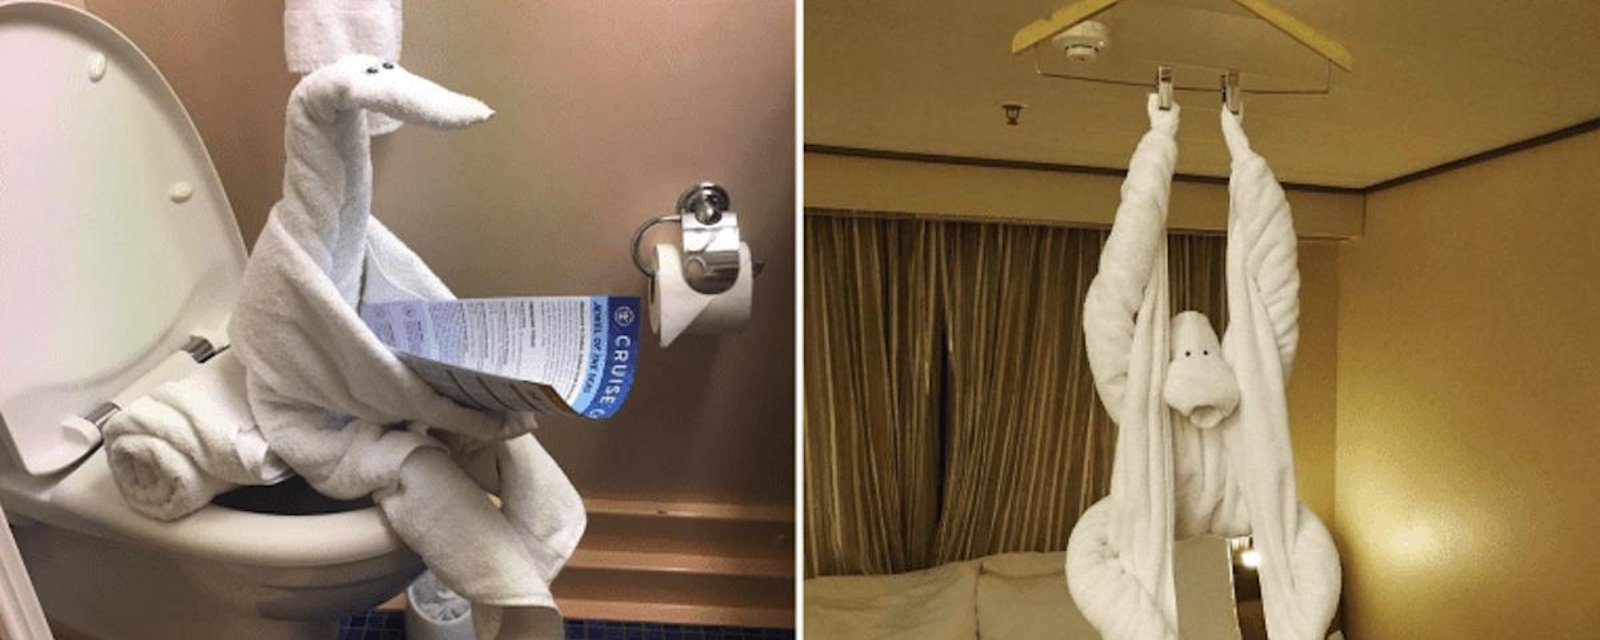 Oubliez les cygnes en serviettes à l’hôtel: en 2020, les femmes de ménage font preuve de plus d’originalité!